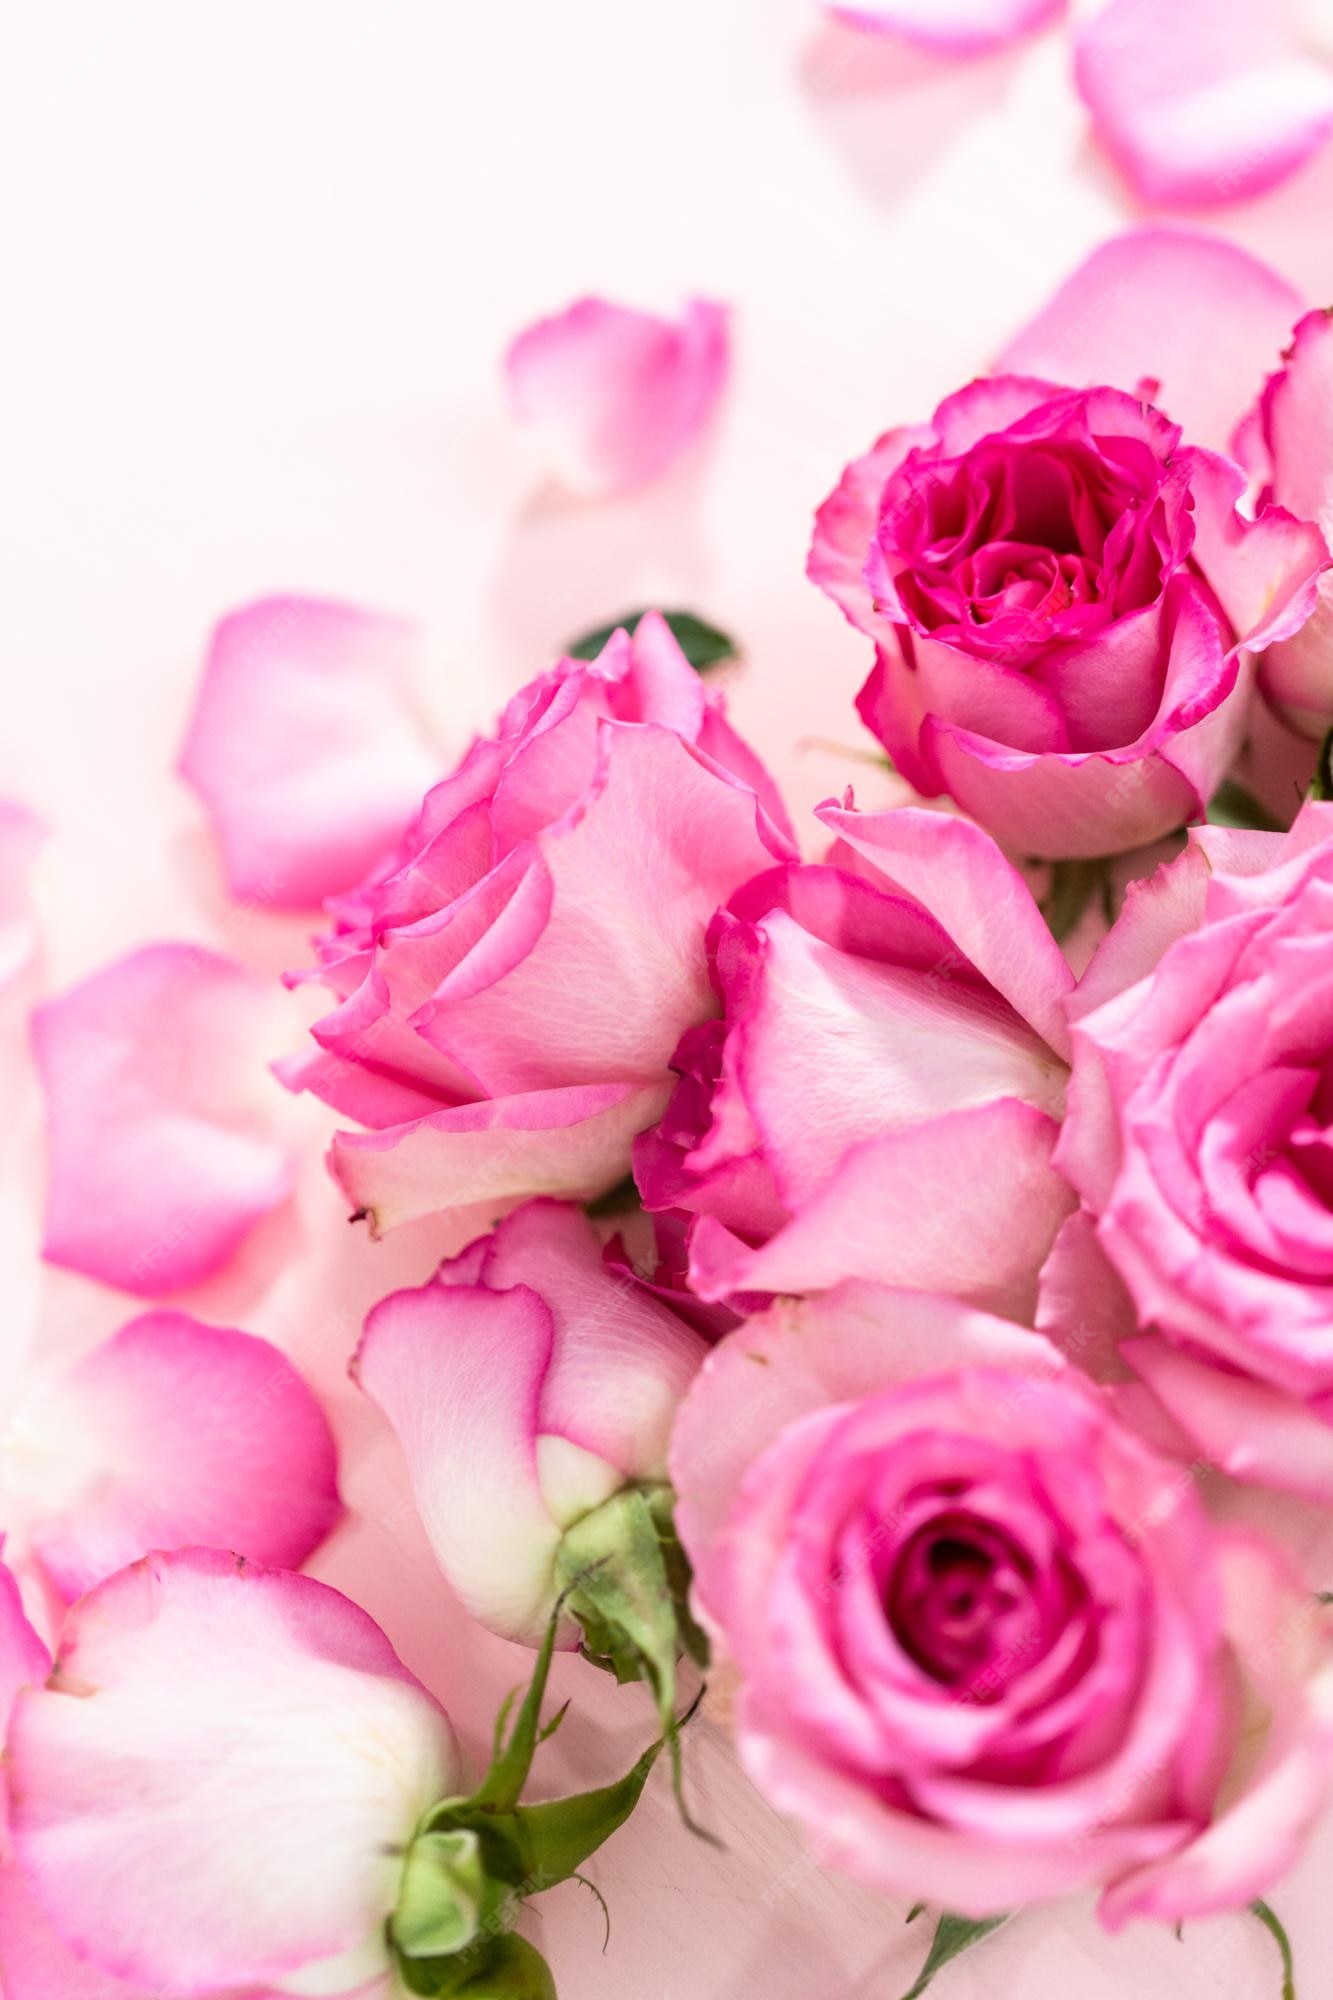 Các tín đồ nữ thích màu hồng chắc chắn sẽ yêu thích hình nền hoa hồng màu hồng tuyệt đẹp này. Những chiếc hoa hồng đầy sức sống và tinh tế đang nở rộ trên màn hình điện thoại của bạn!